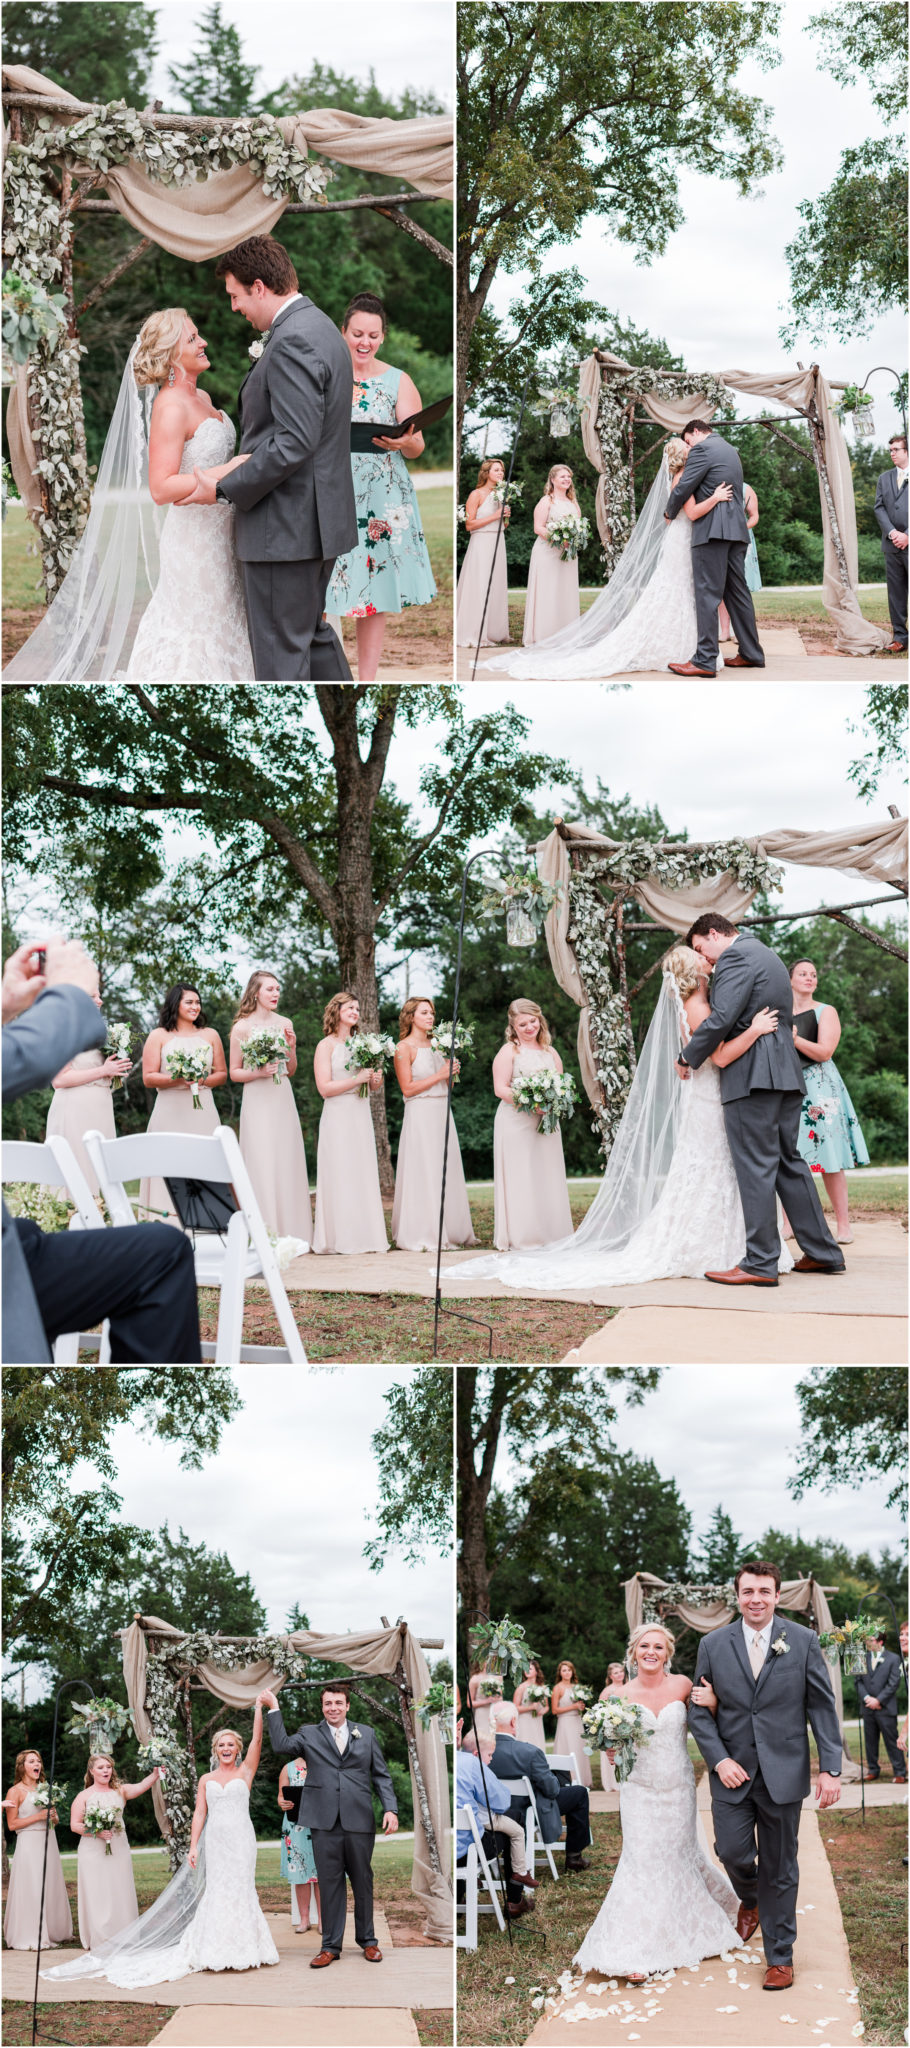 An Ellery Farms Wedding in Woodruff South Carolina outdoor wedding ceremony